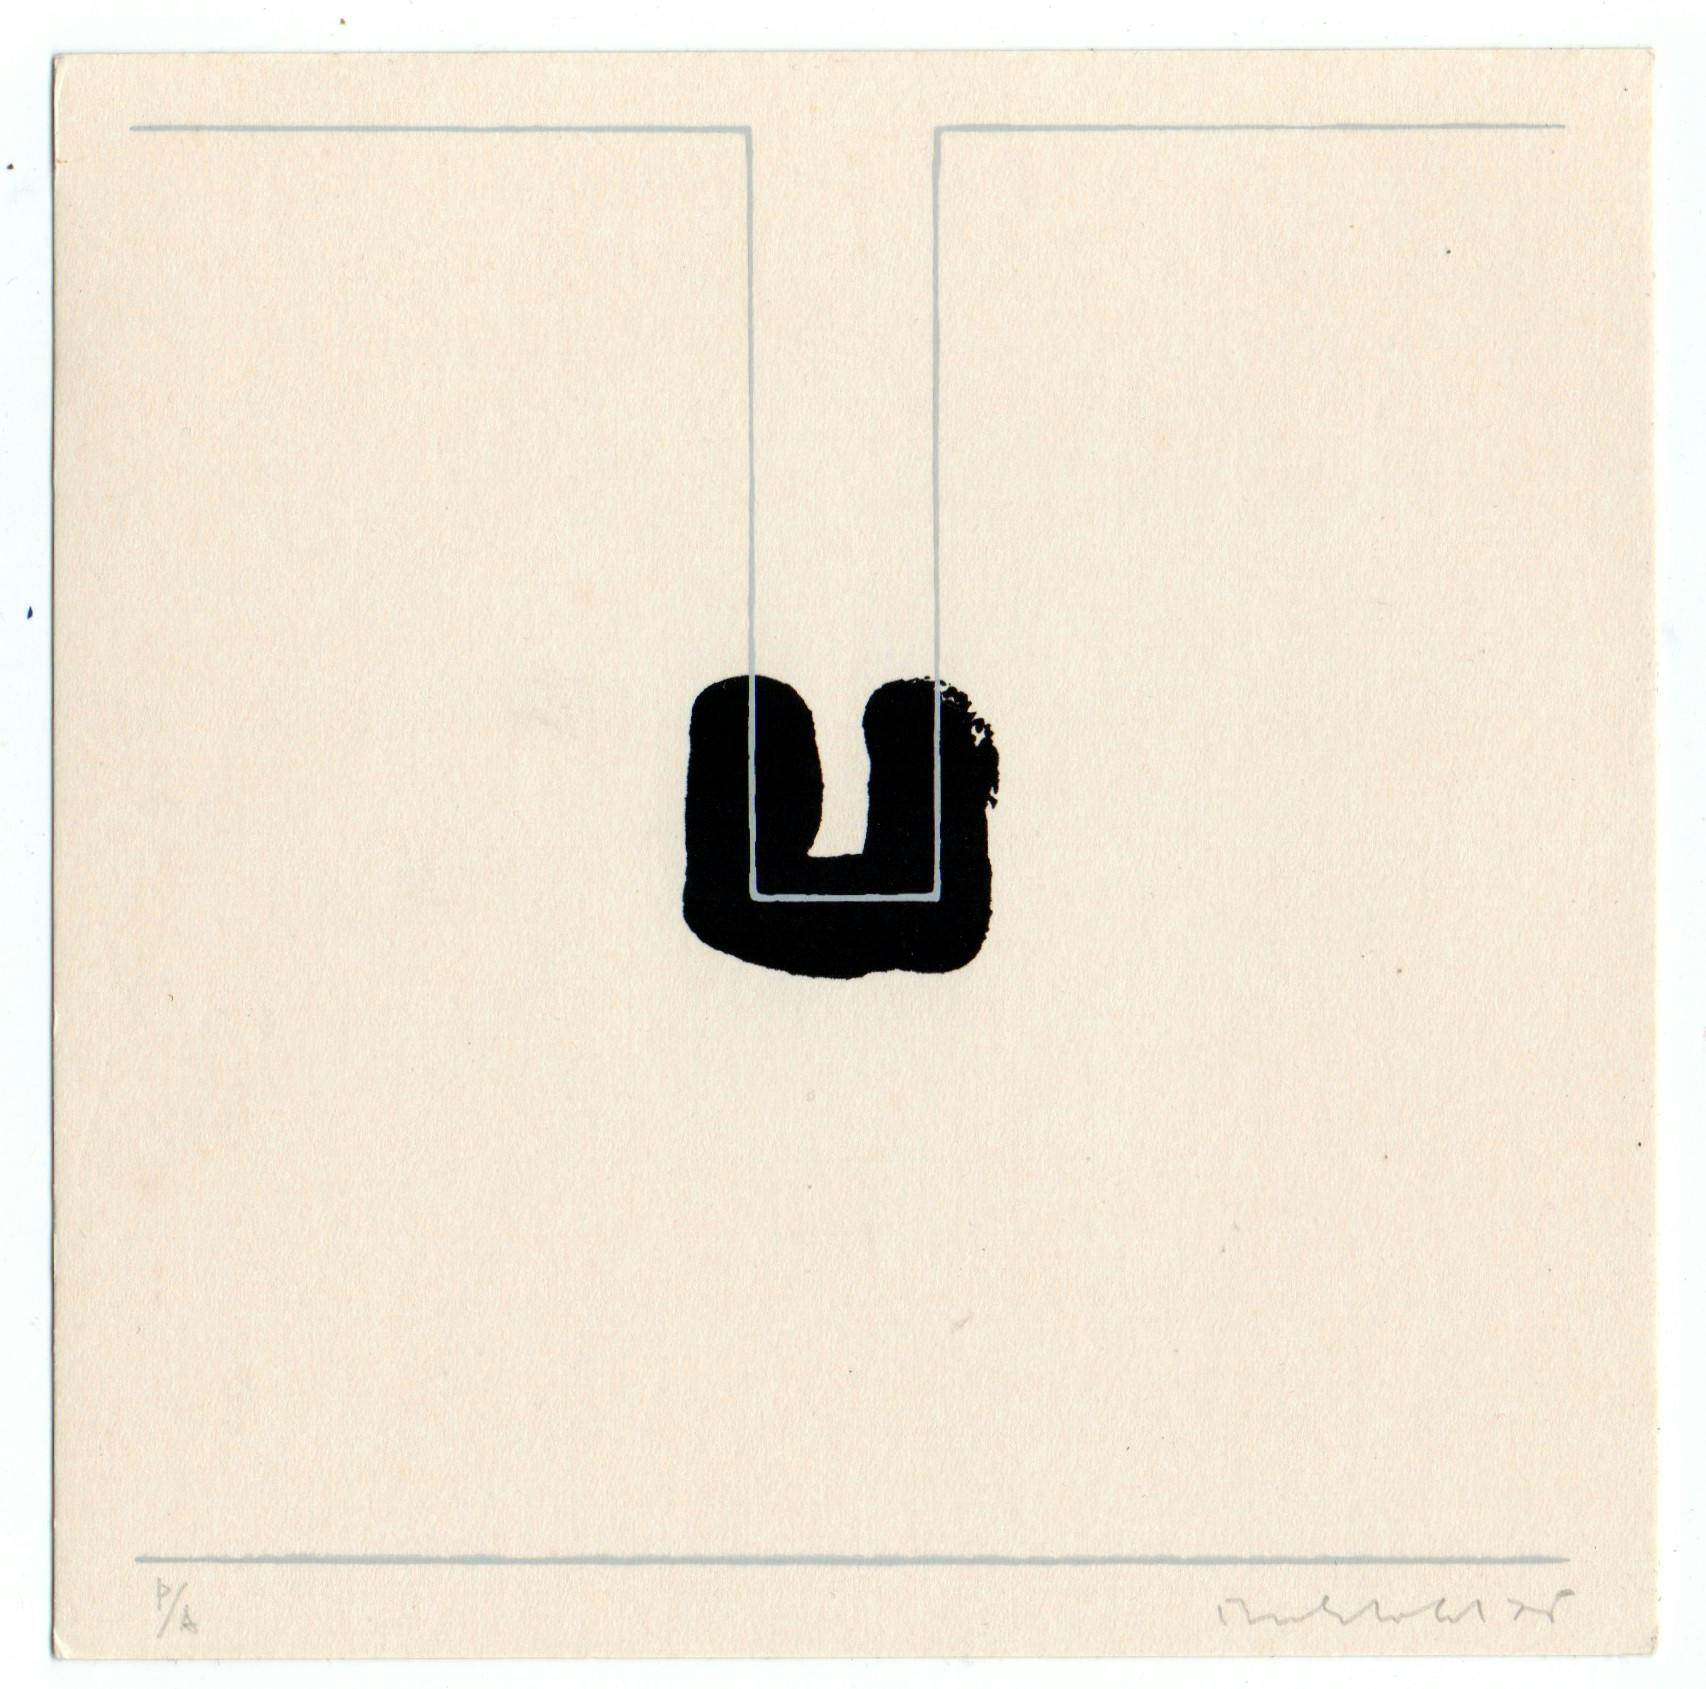 Erwin Bechtold - Zeefdruk - ‘Abstracte compositie’ - handgesigneerd - 1975 kopen? Bied vanaf 30!